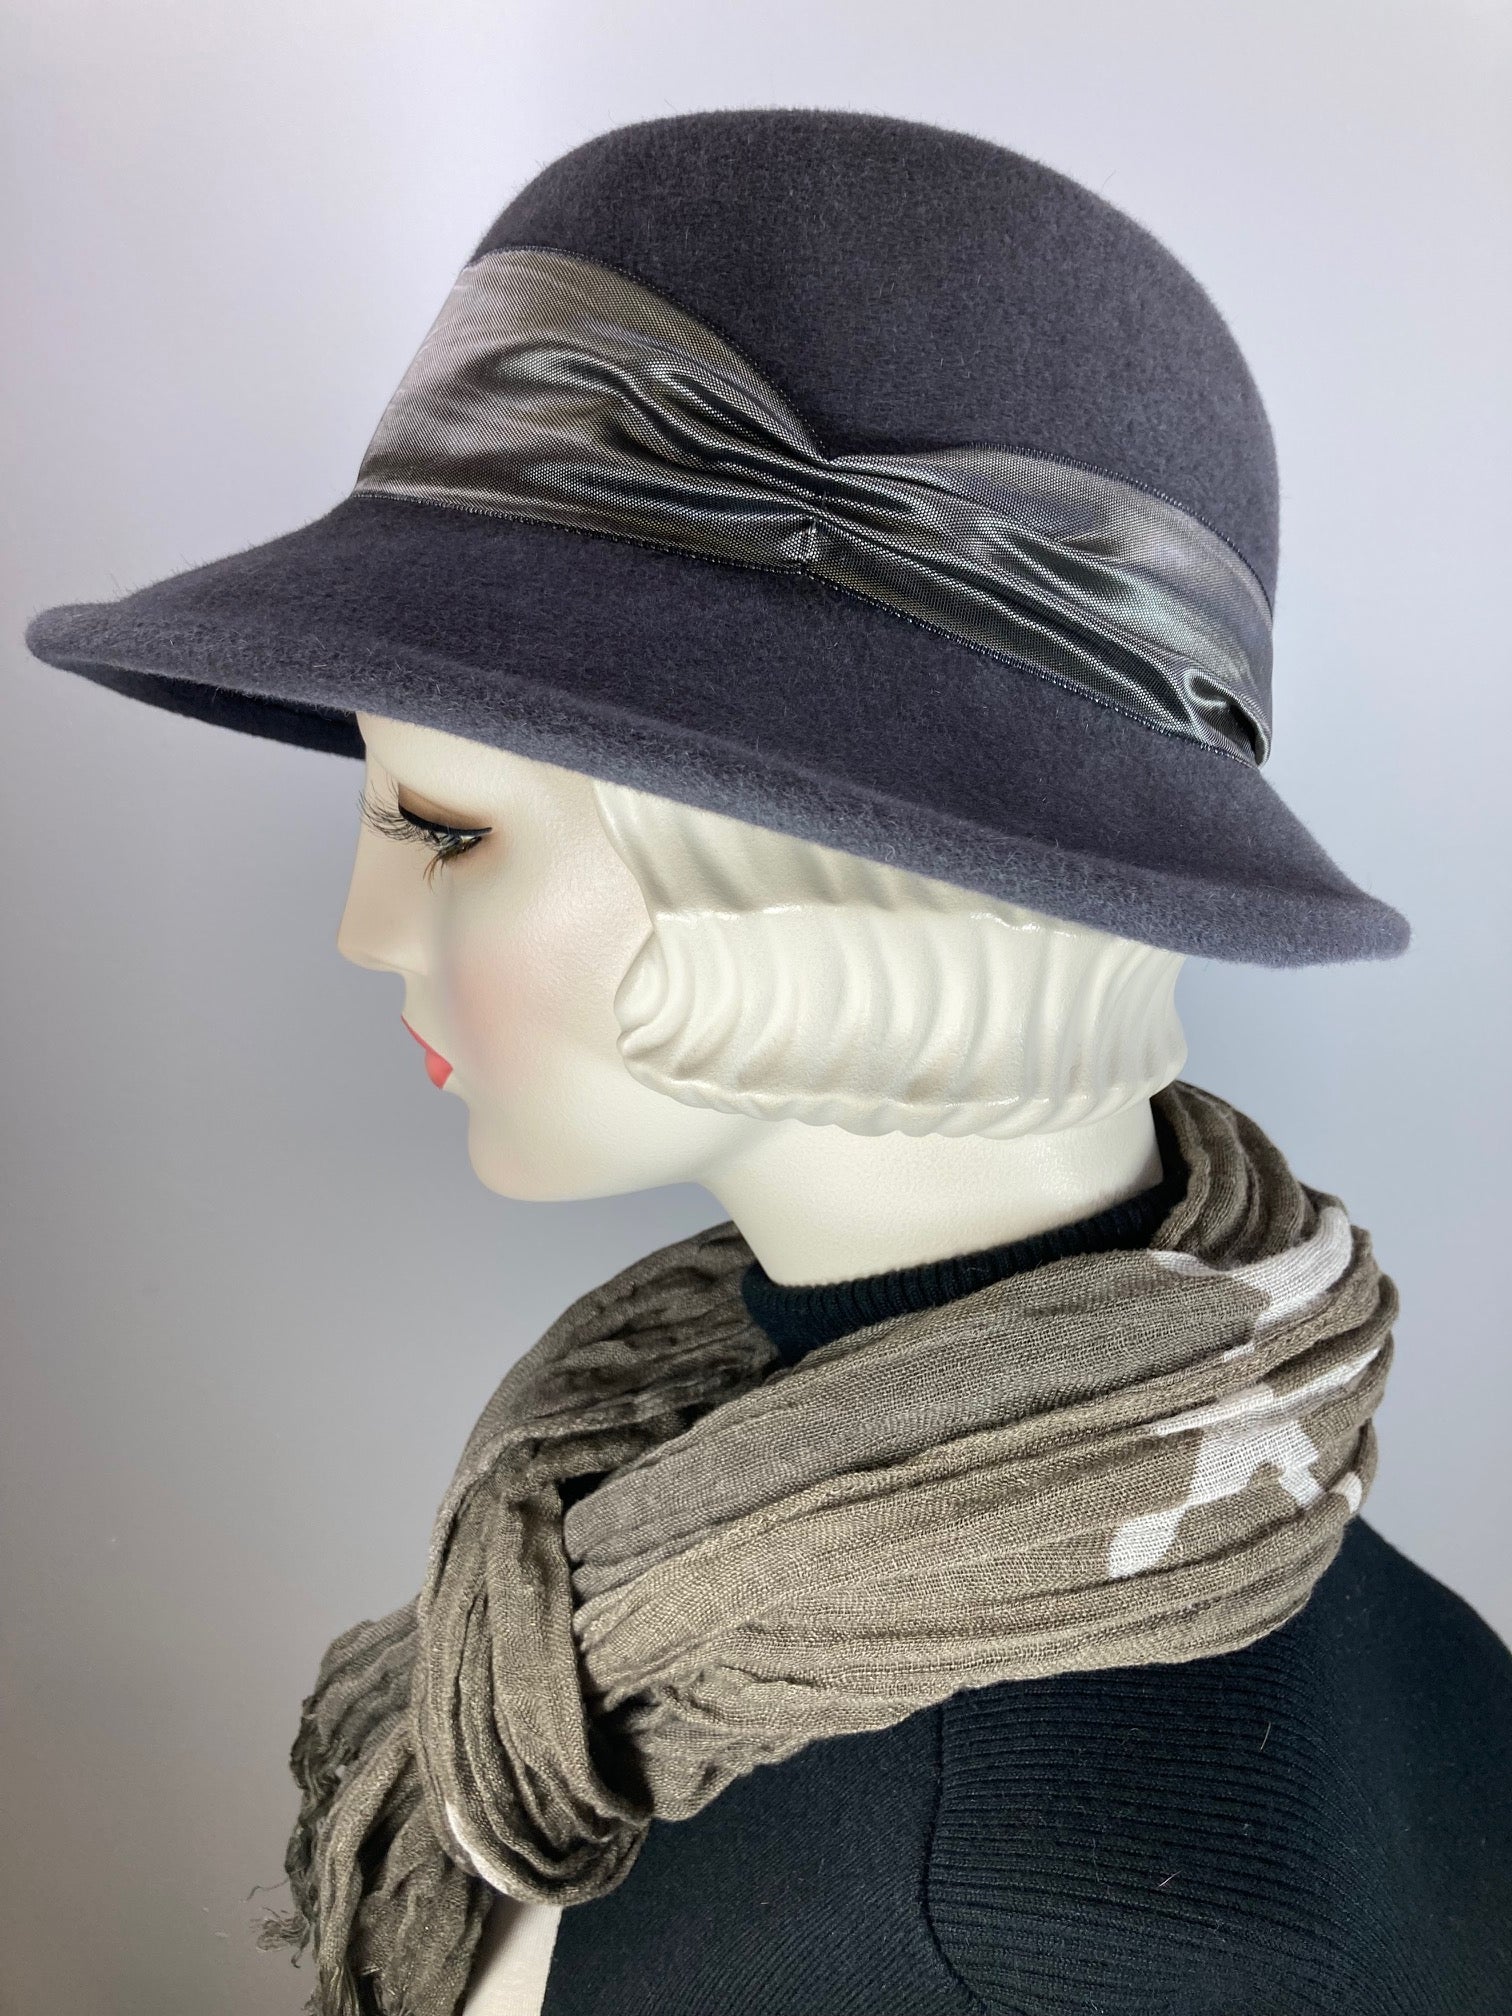 Women's Menswear Warm Wool Felt Hat in Gray for Winter, Ladies Gray Winter Fedora Hat, What a Great Hat.